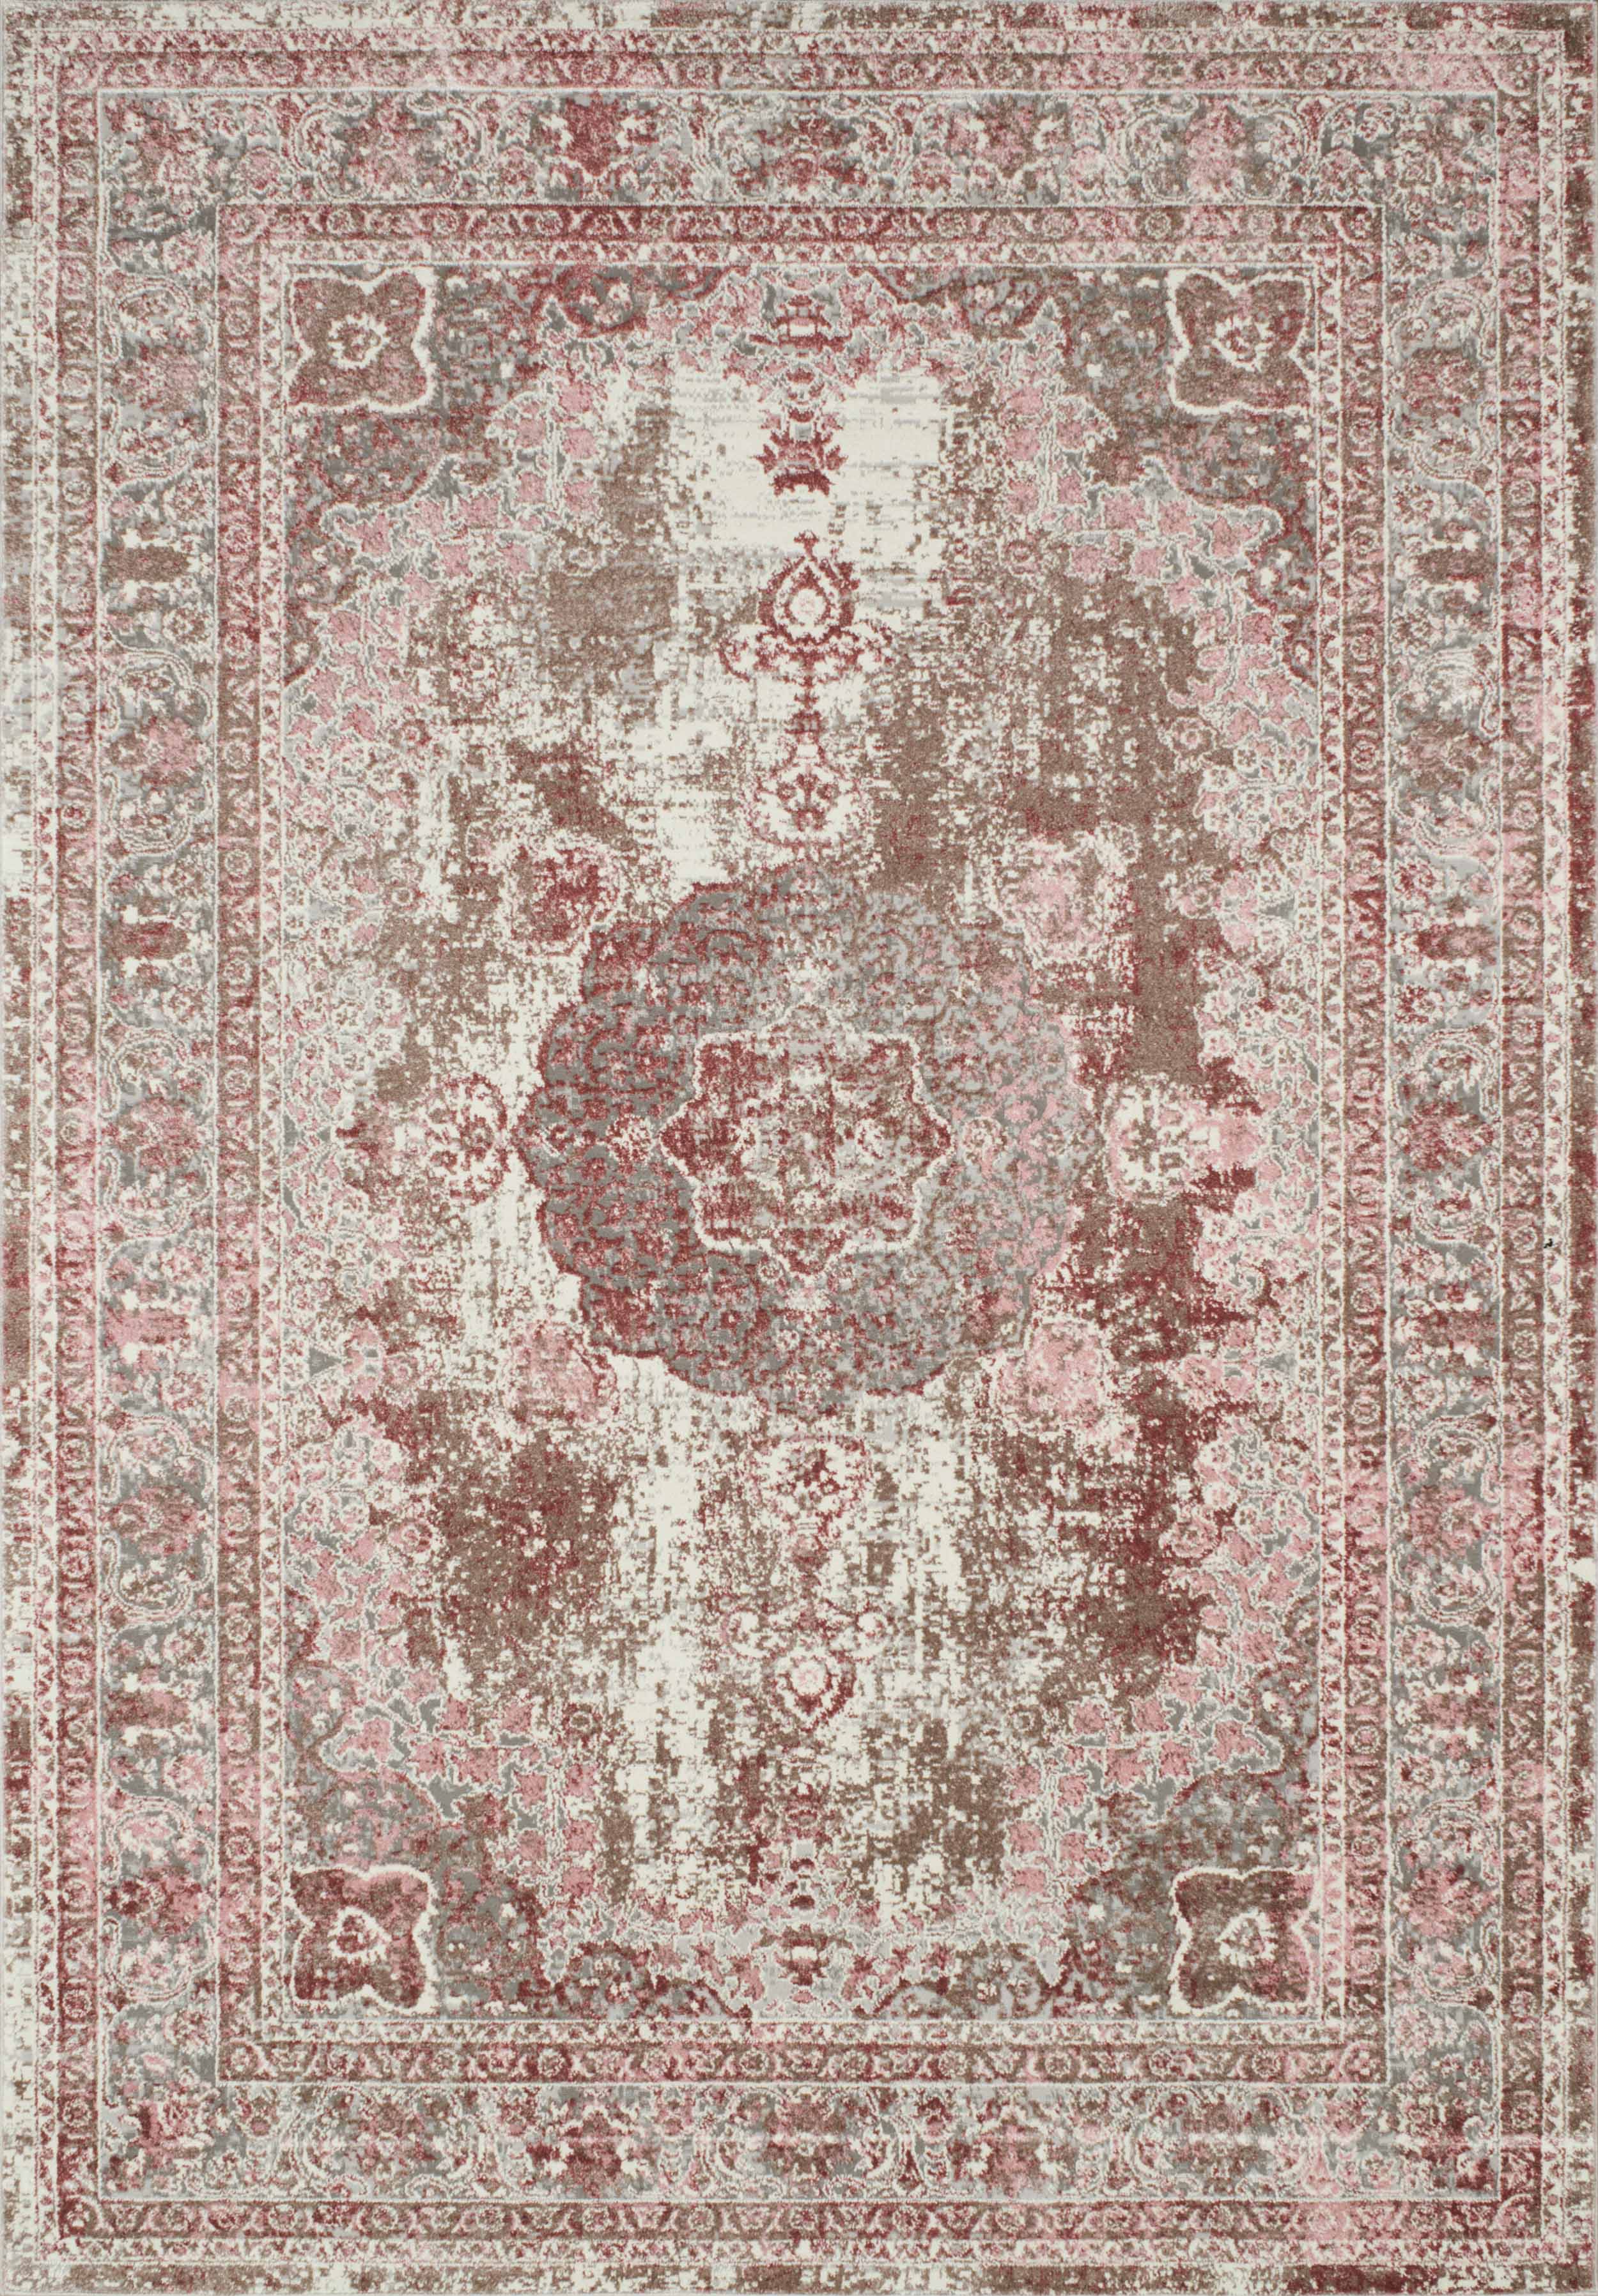 Tapis vintage motif baroque rose - 160x230